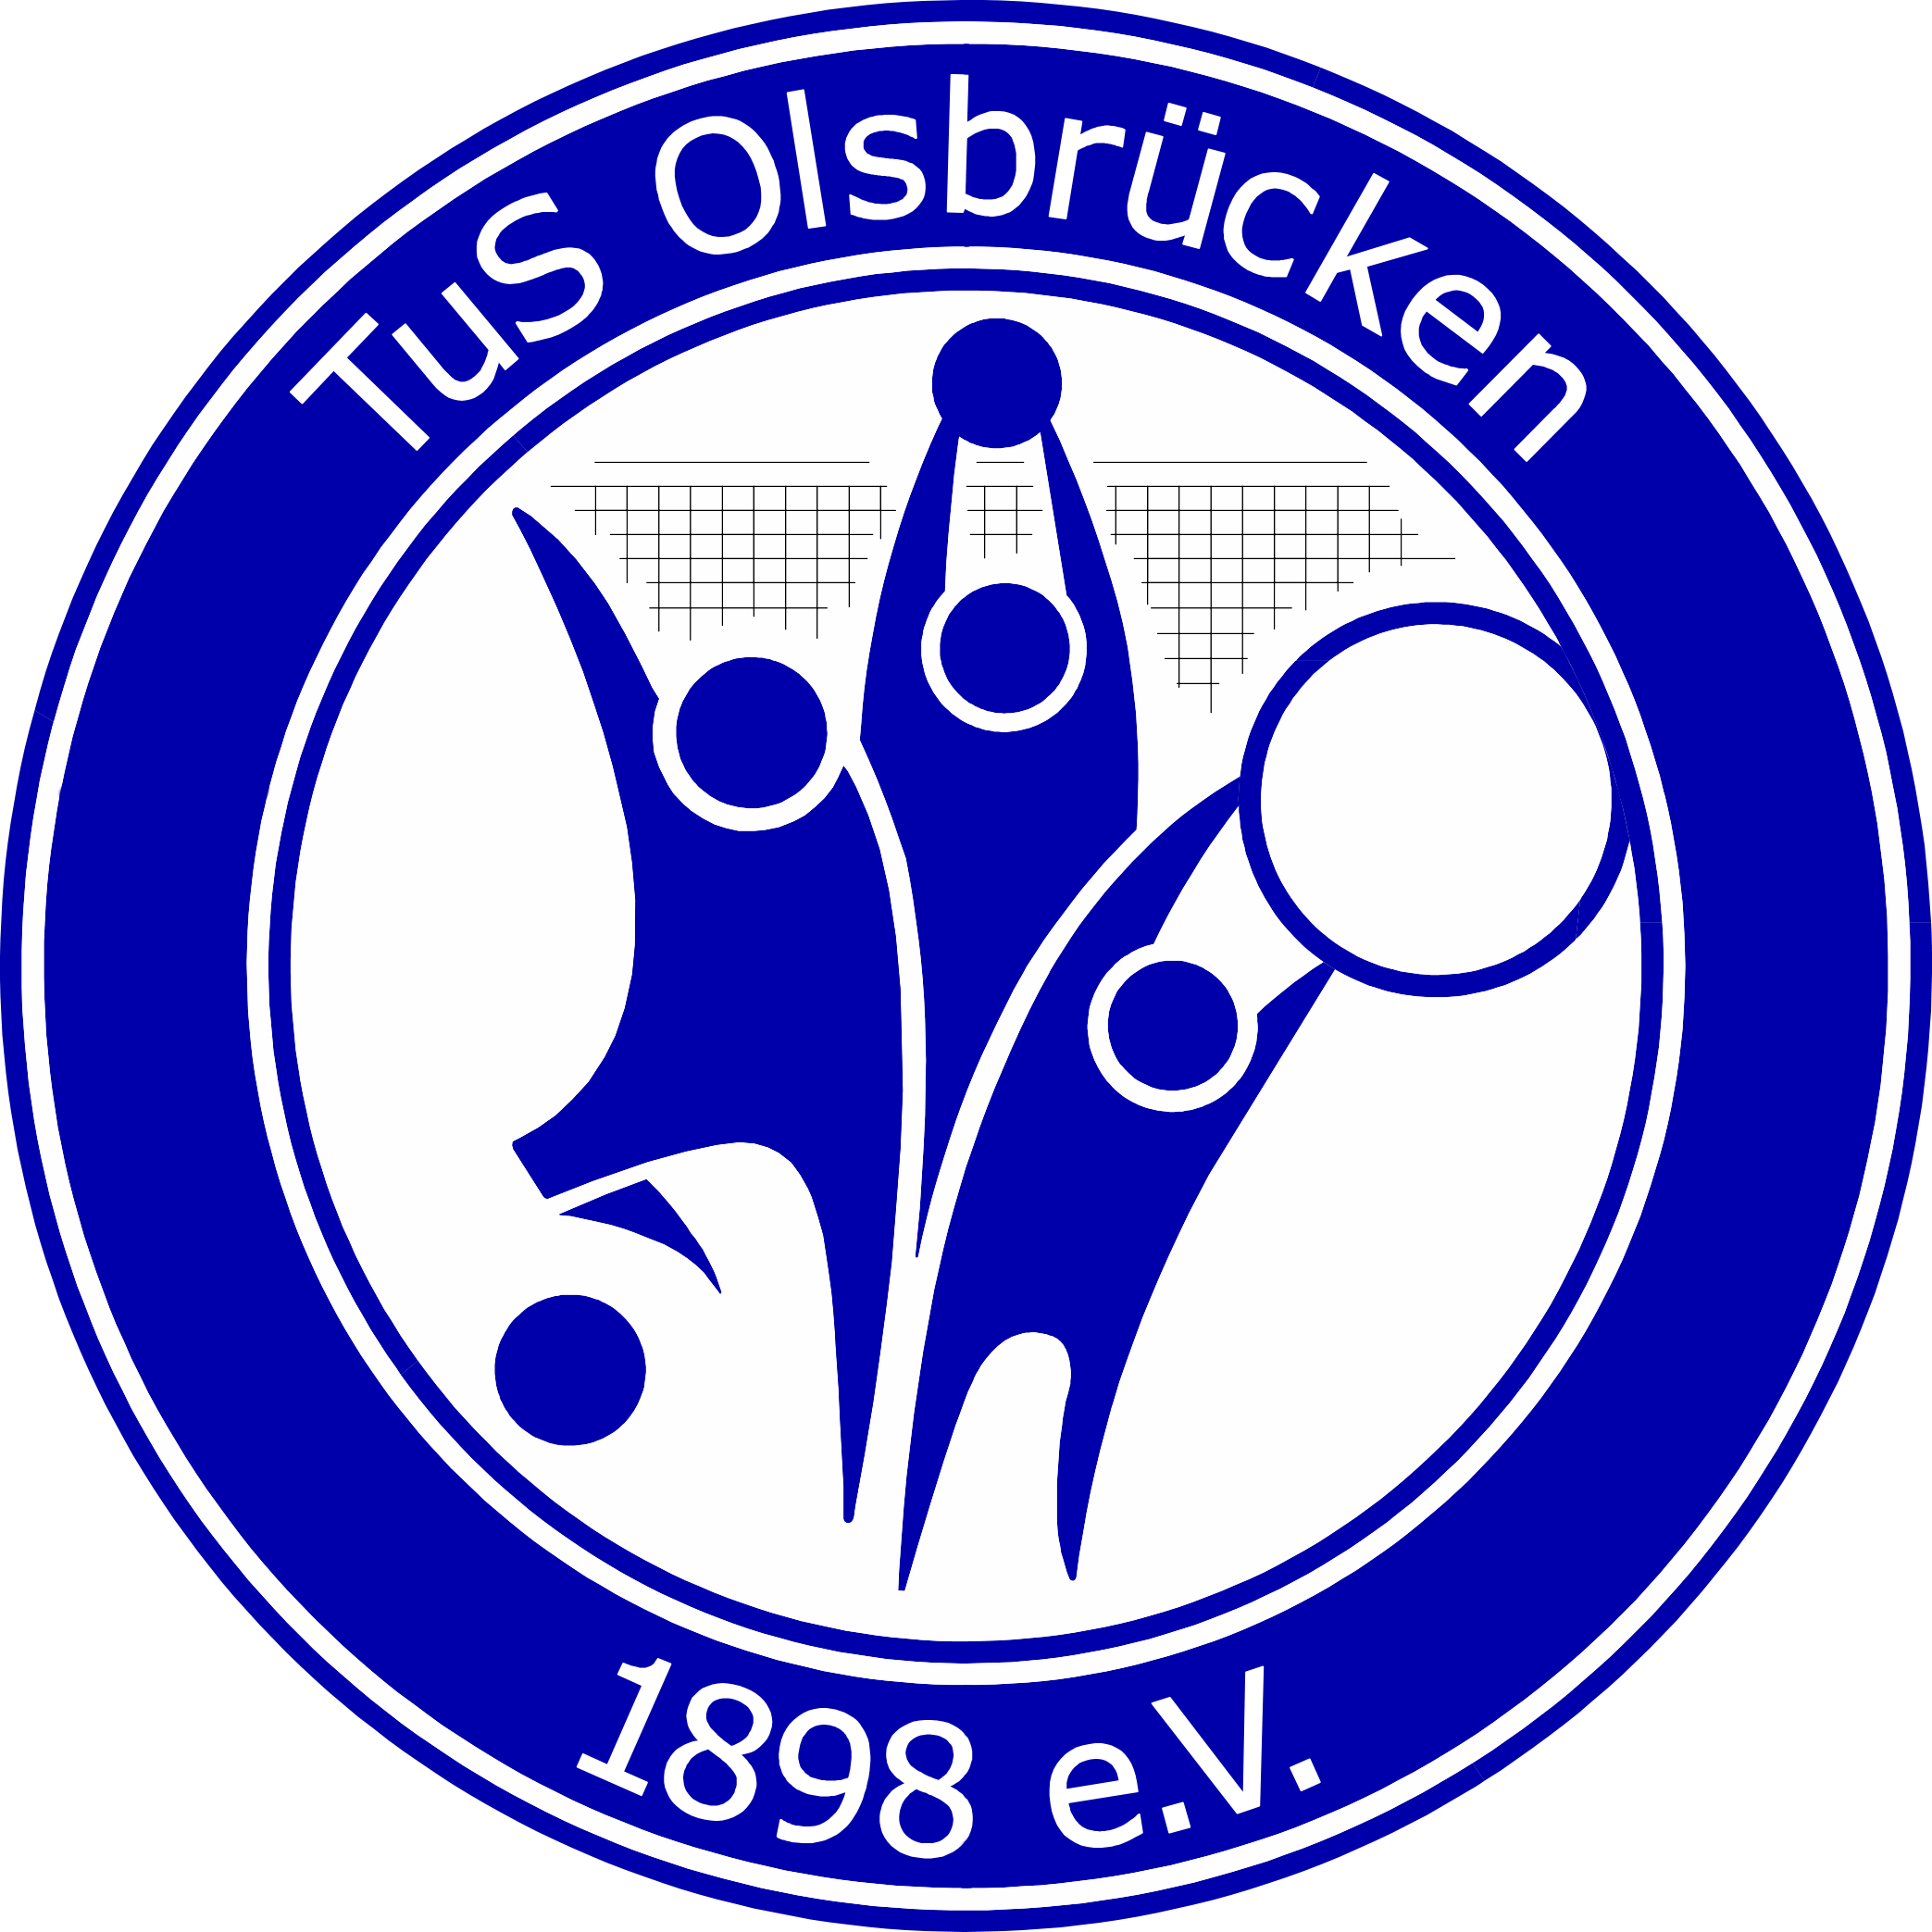 TuS Olsbrücken 1898 e. V. - Logo